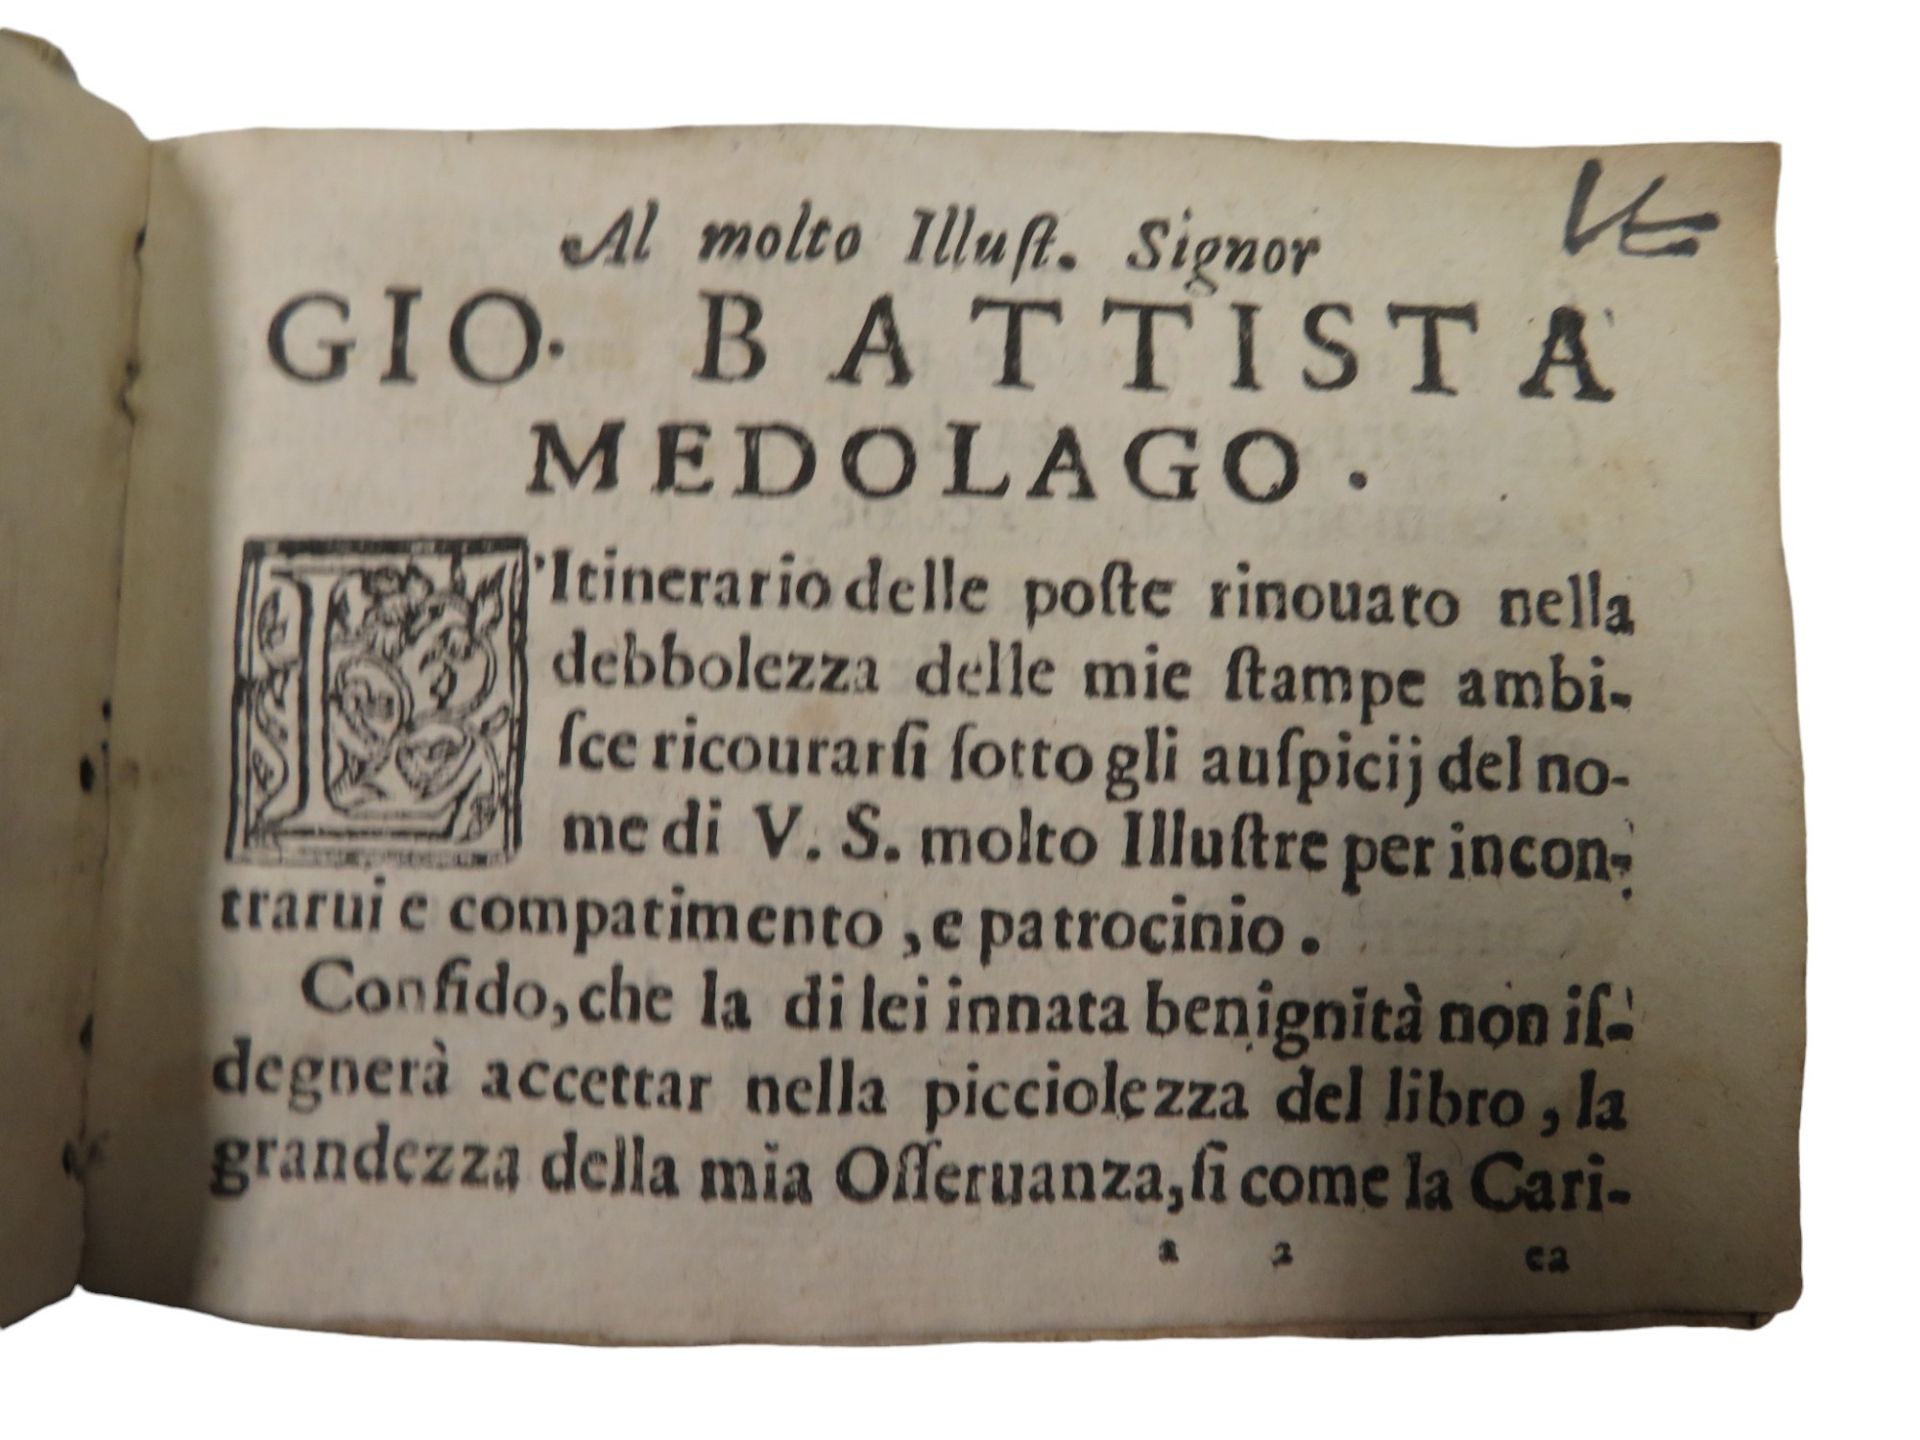 Bd., Codogno, Ottavio (Urheber): Nuovo itinerario delle Poste per tutto il mondo. Venetia, Giacomo - Image 2 of 4